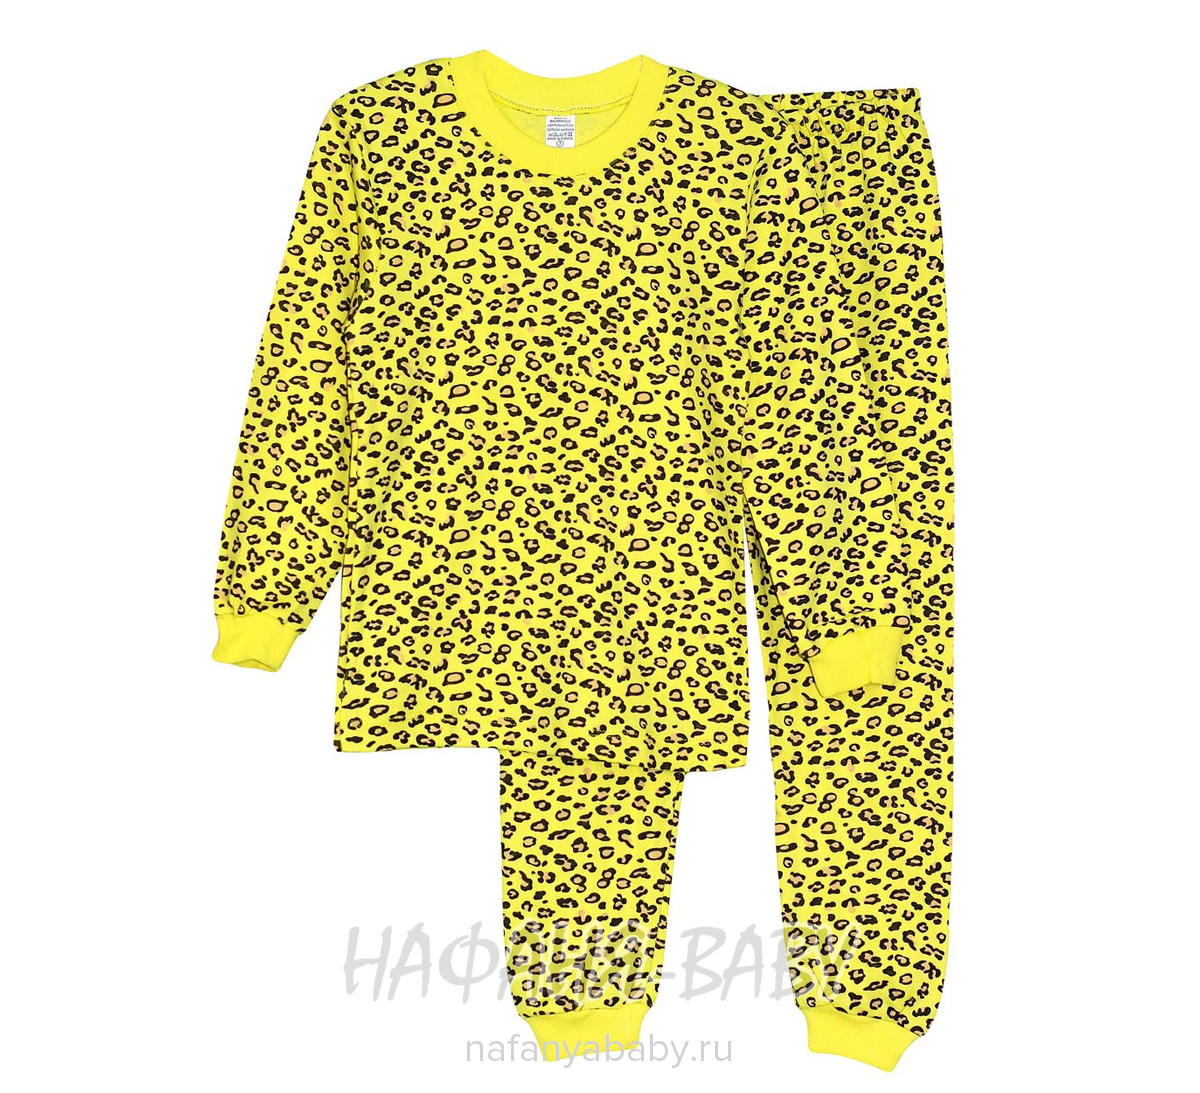 Детская пижама JULLY, купить в интернет магазине Нафаня. арт: 275.